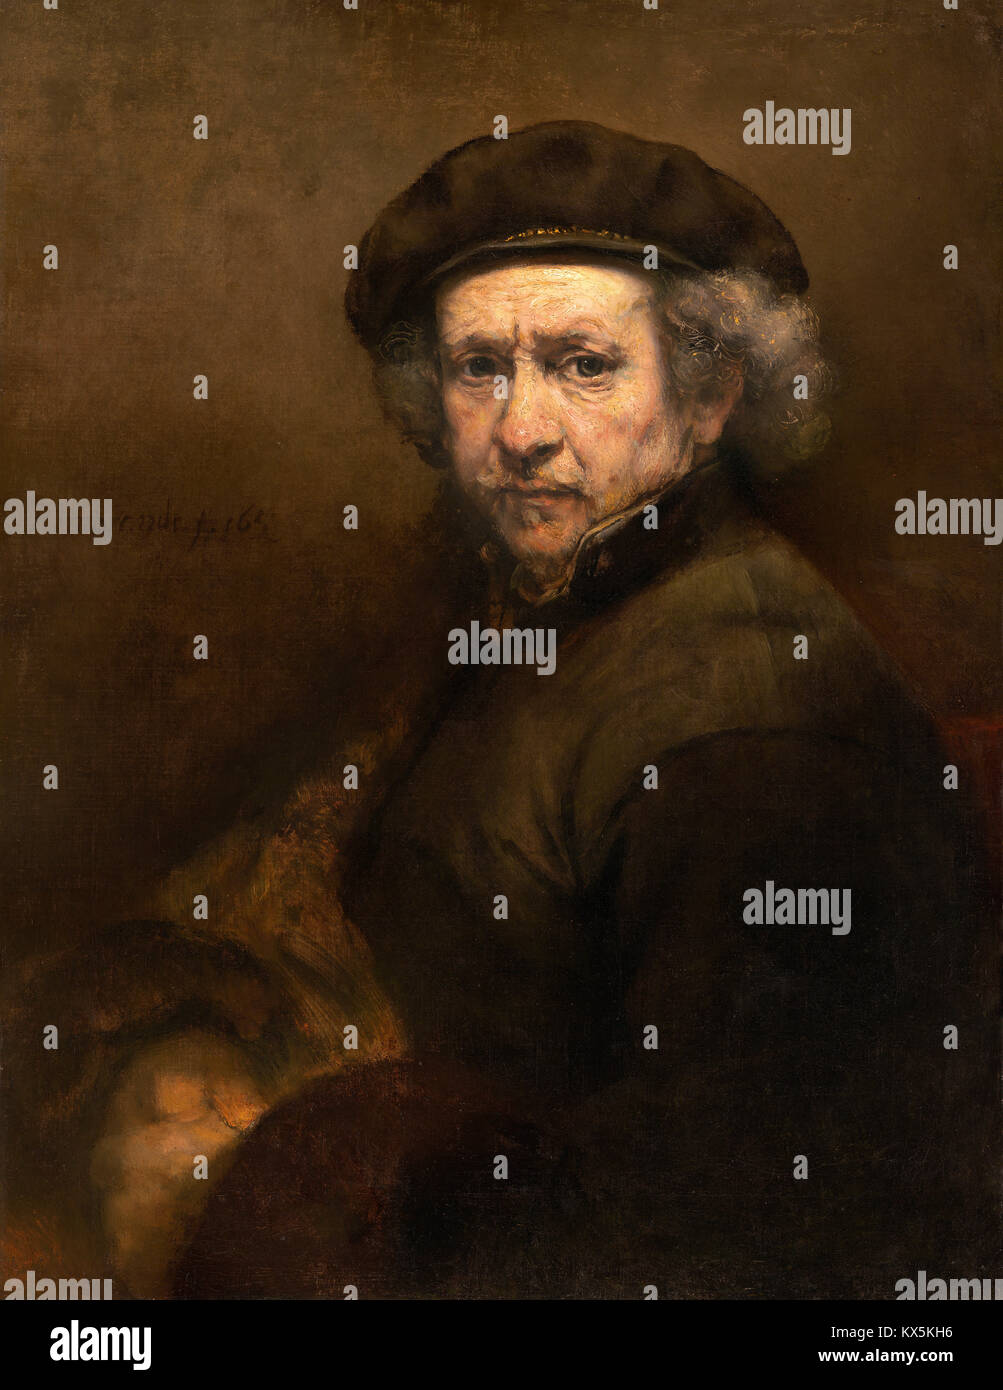 Rembrandt, Rembrandt Harmenszoon van Rijn, self-portrait, Dutch painter Stock Photo